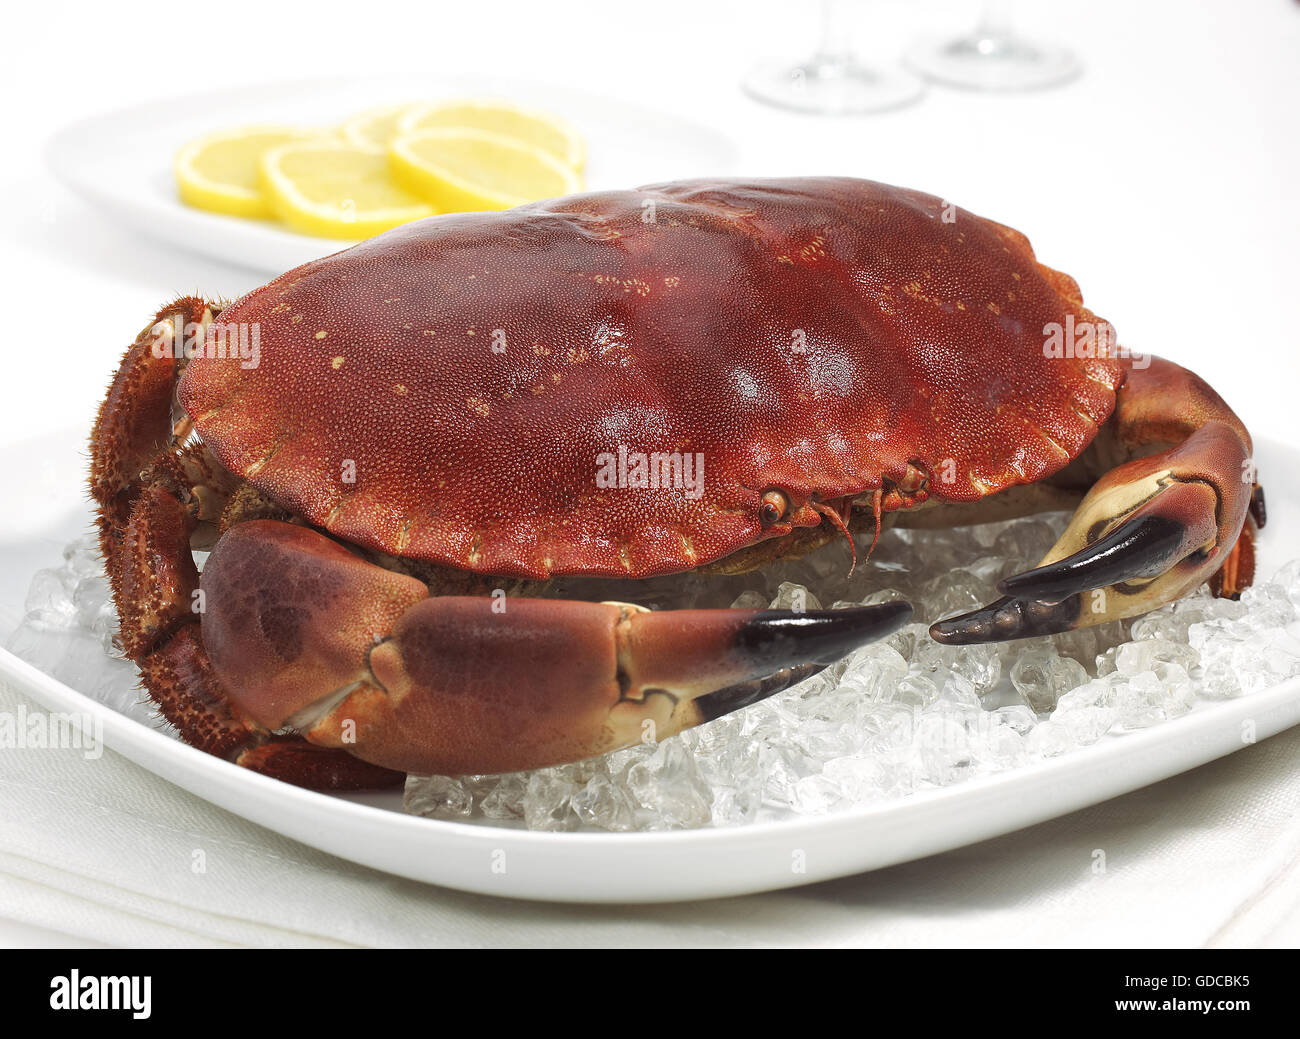 Granchio di mare, Cancer pagurus, crostaceo in una piastra con ghiaccio contro uno sfondo bianco Foto Stock